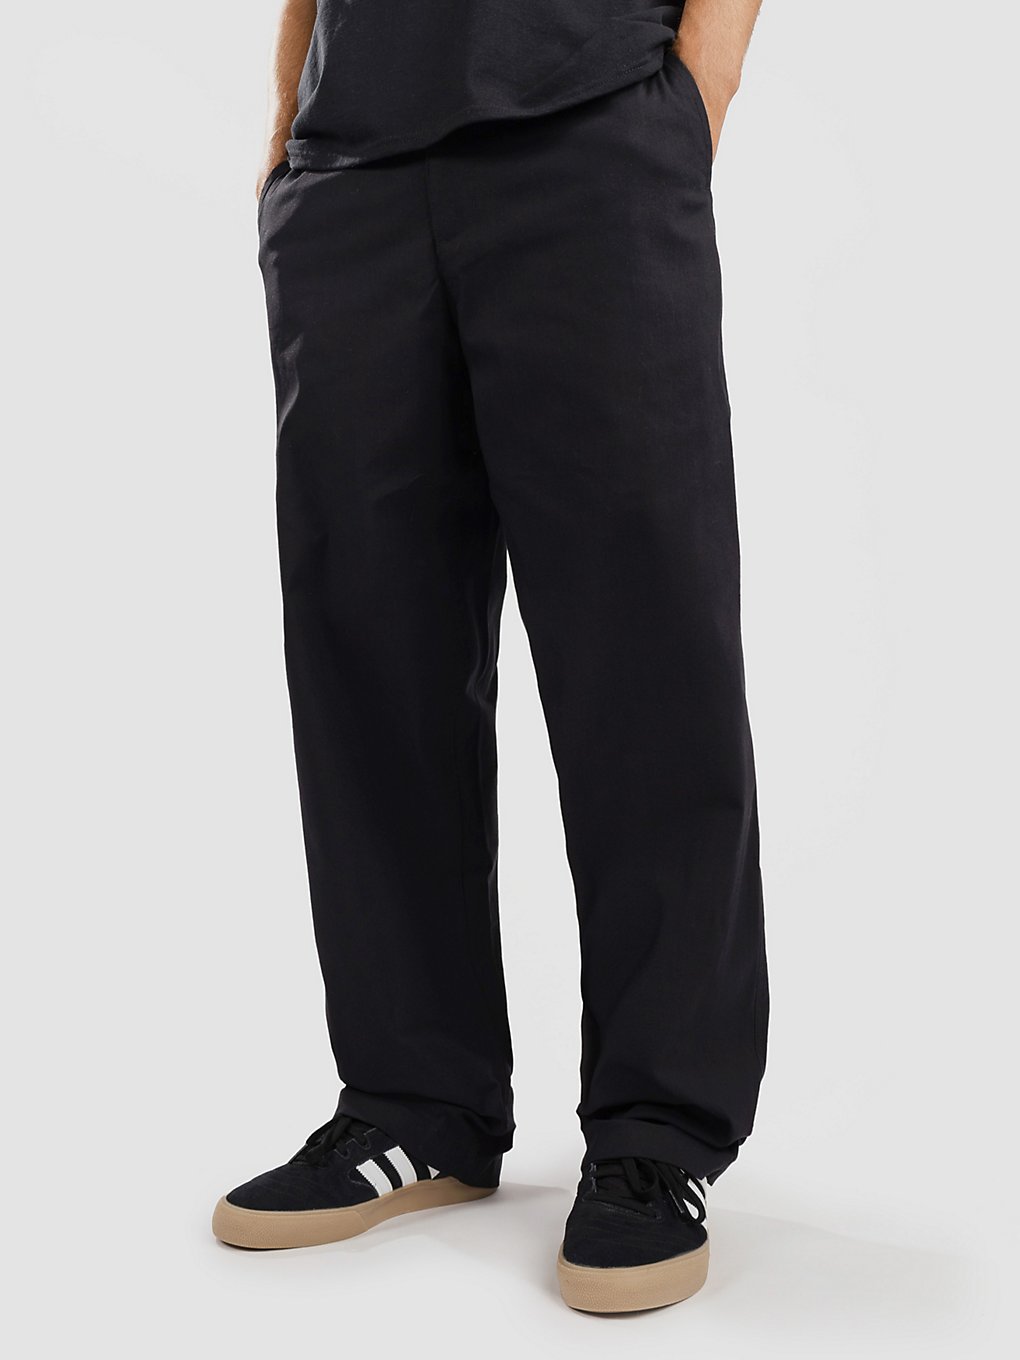 Nike SB Loose Fit Chino Pants svart